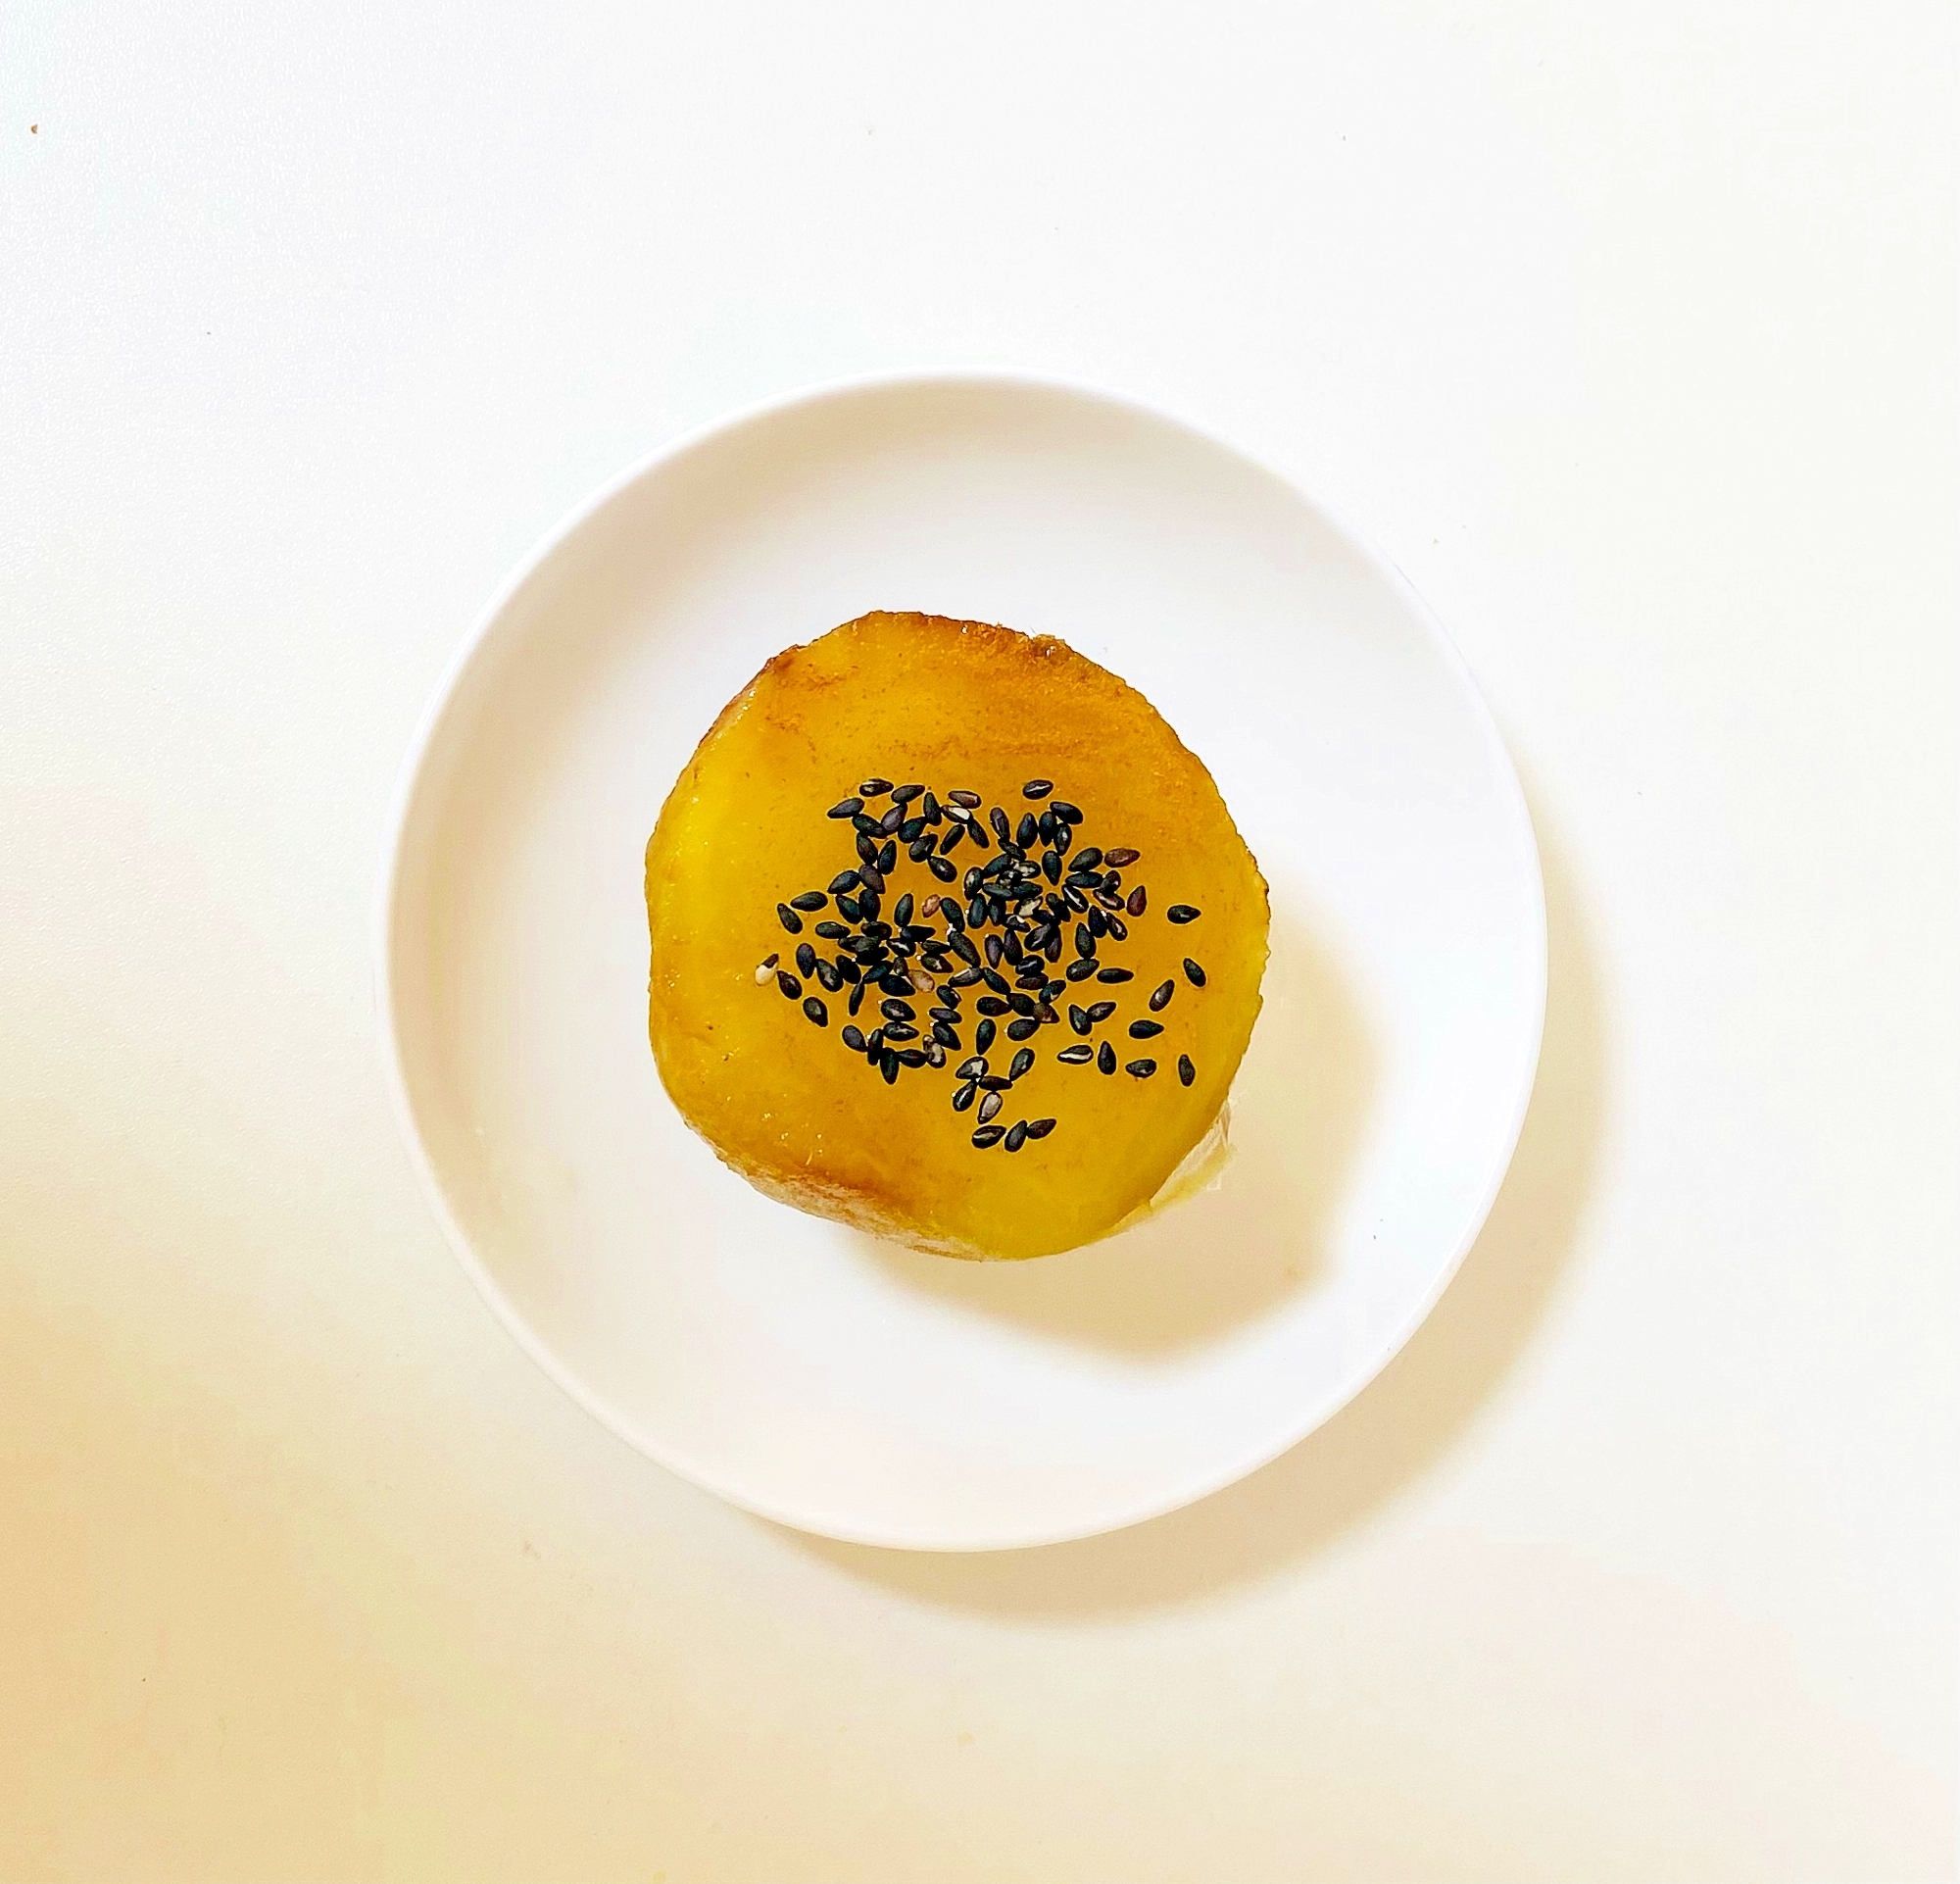 シナモン風味のさつま芋のデザート